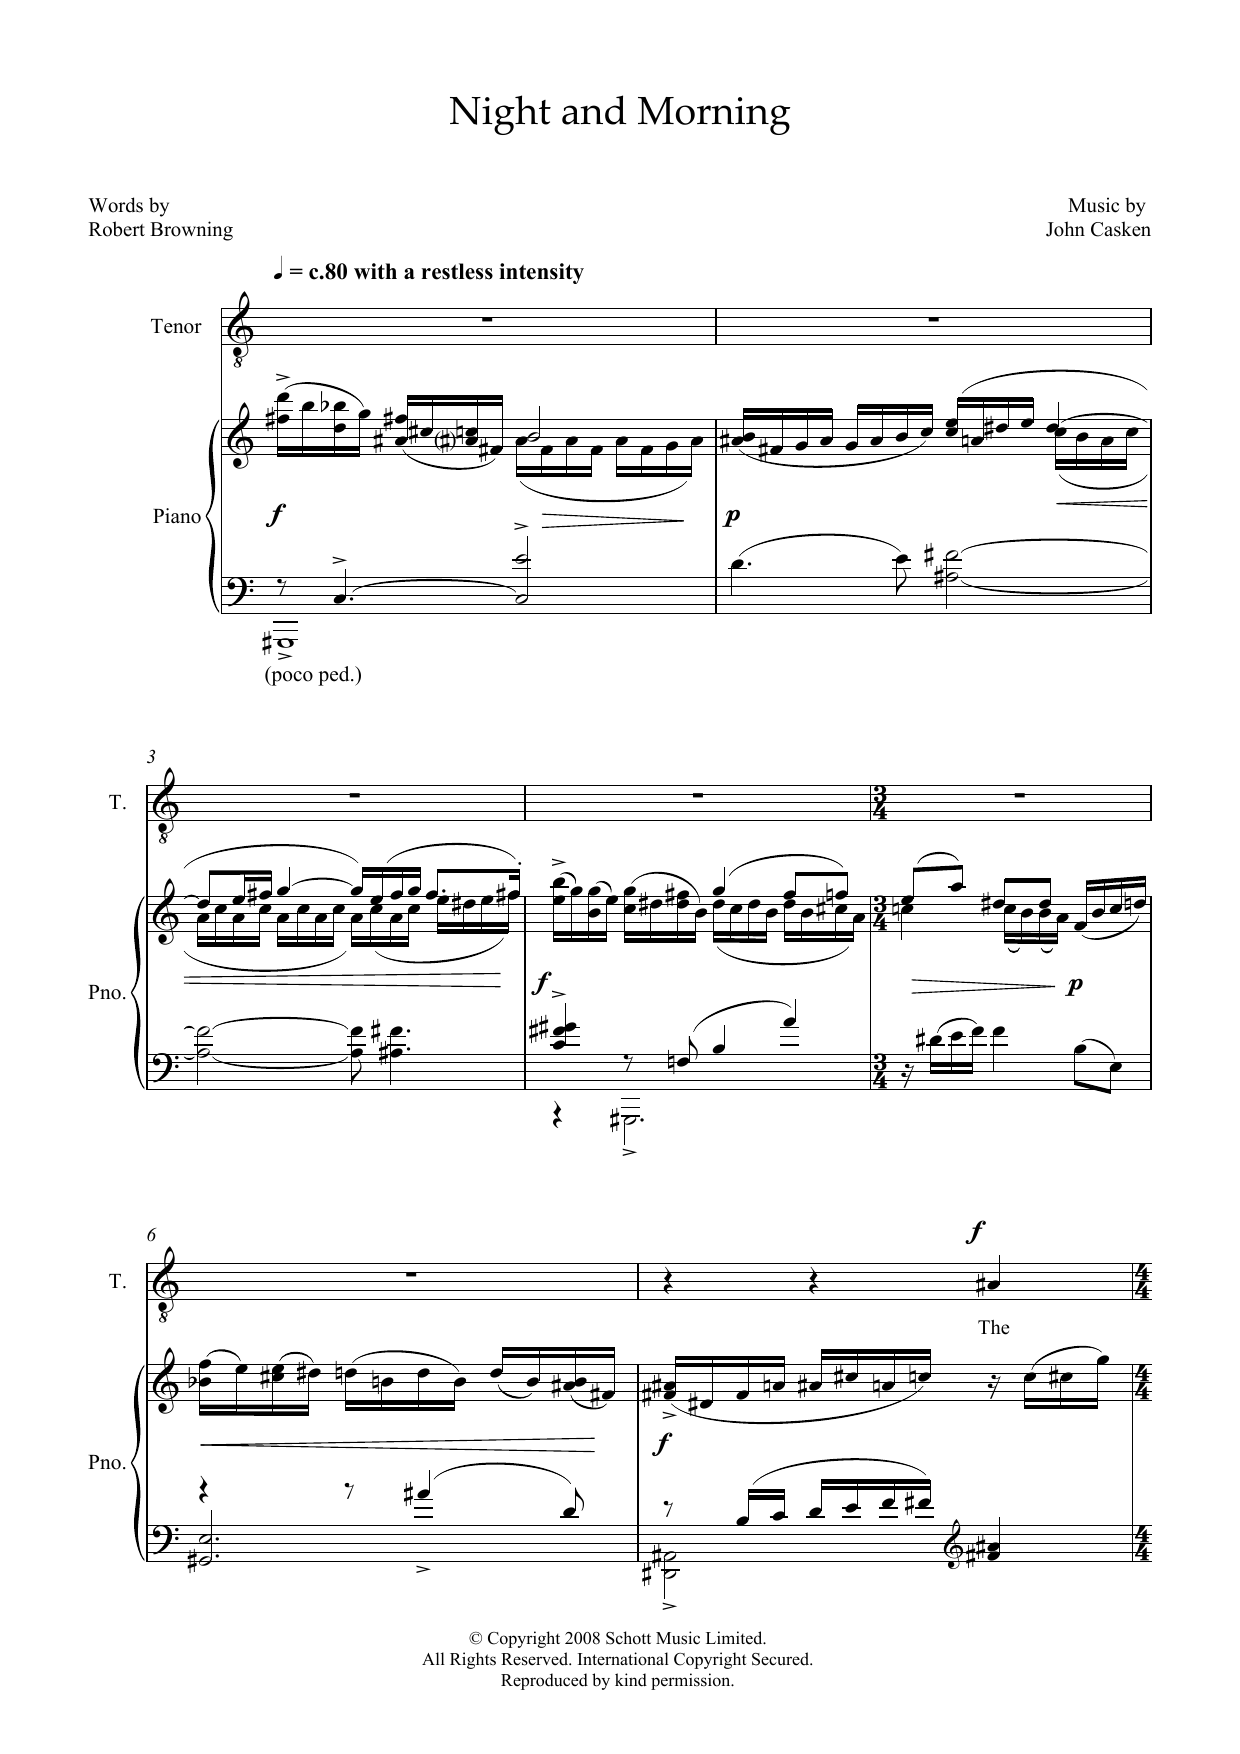 Download John Casken Night and Morning (for tenor & piano) Sheet Music